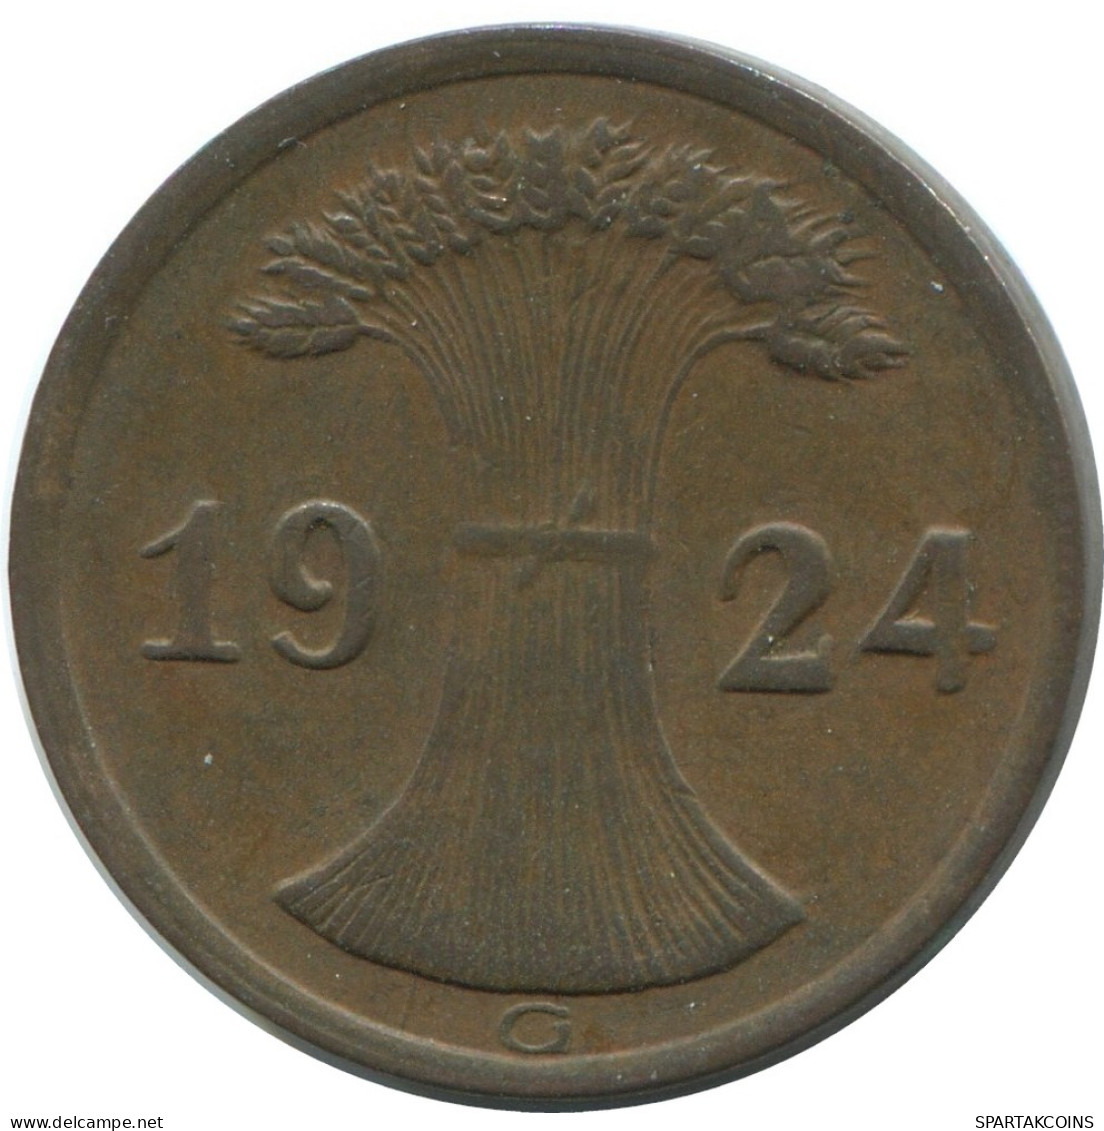 2 REICHSPFENNIG 1924 G ALEMANIA Moneda GERMANY #AE279.E - 2 Renten- & 2 Reichspfennig